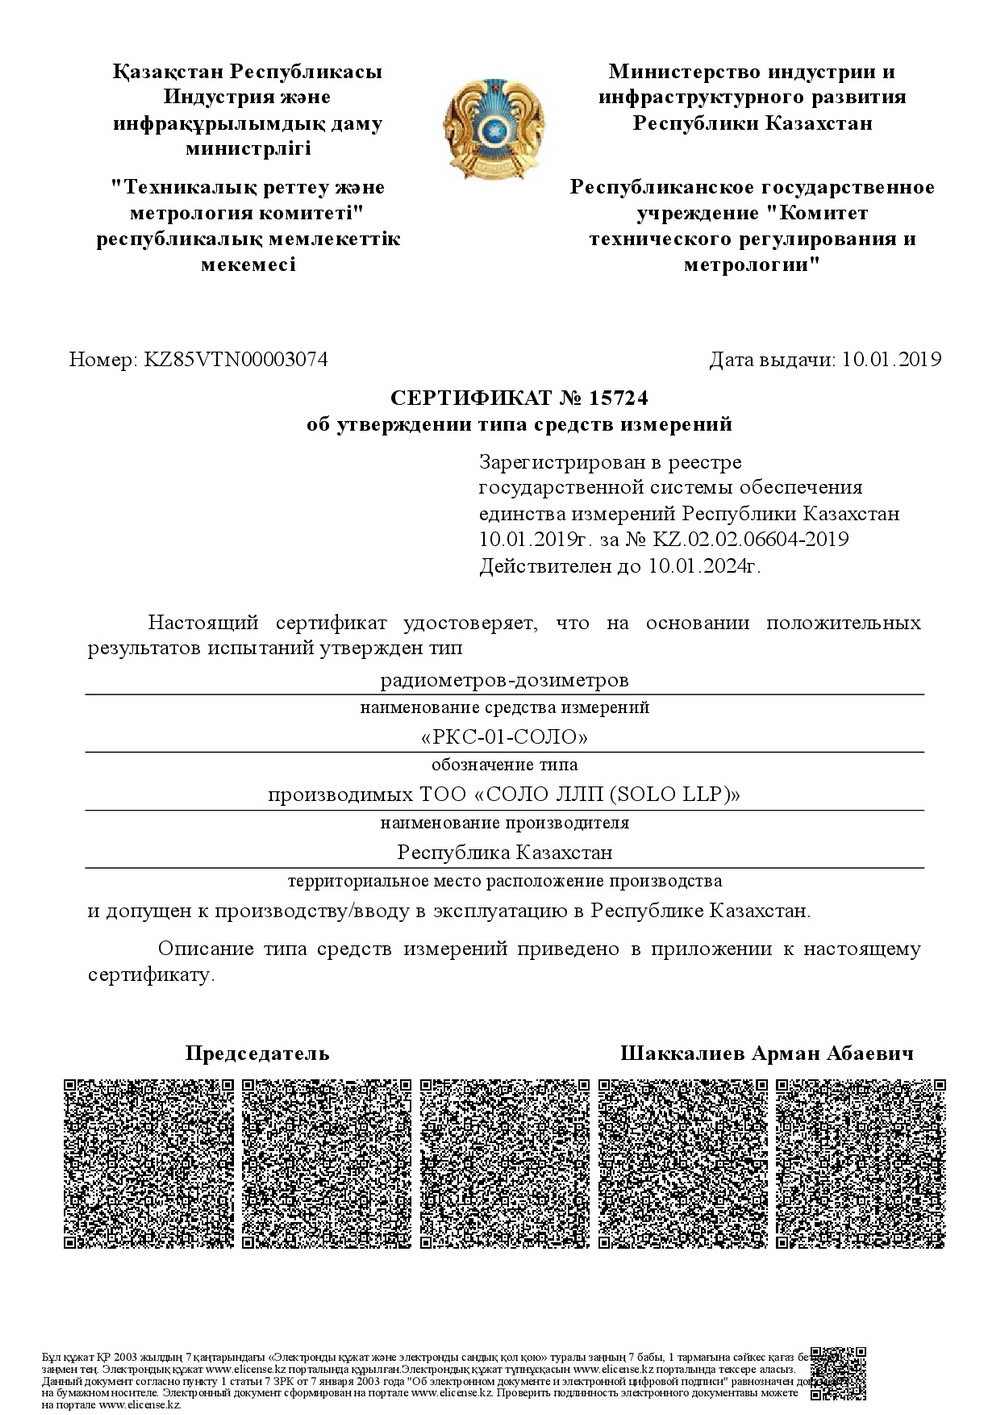 Сертификат об утверждении типа РКС-01-СОЛО